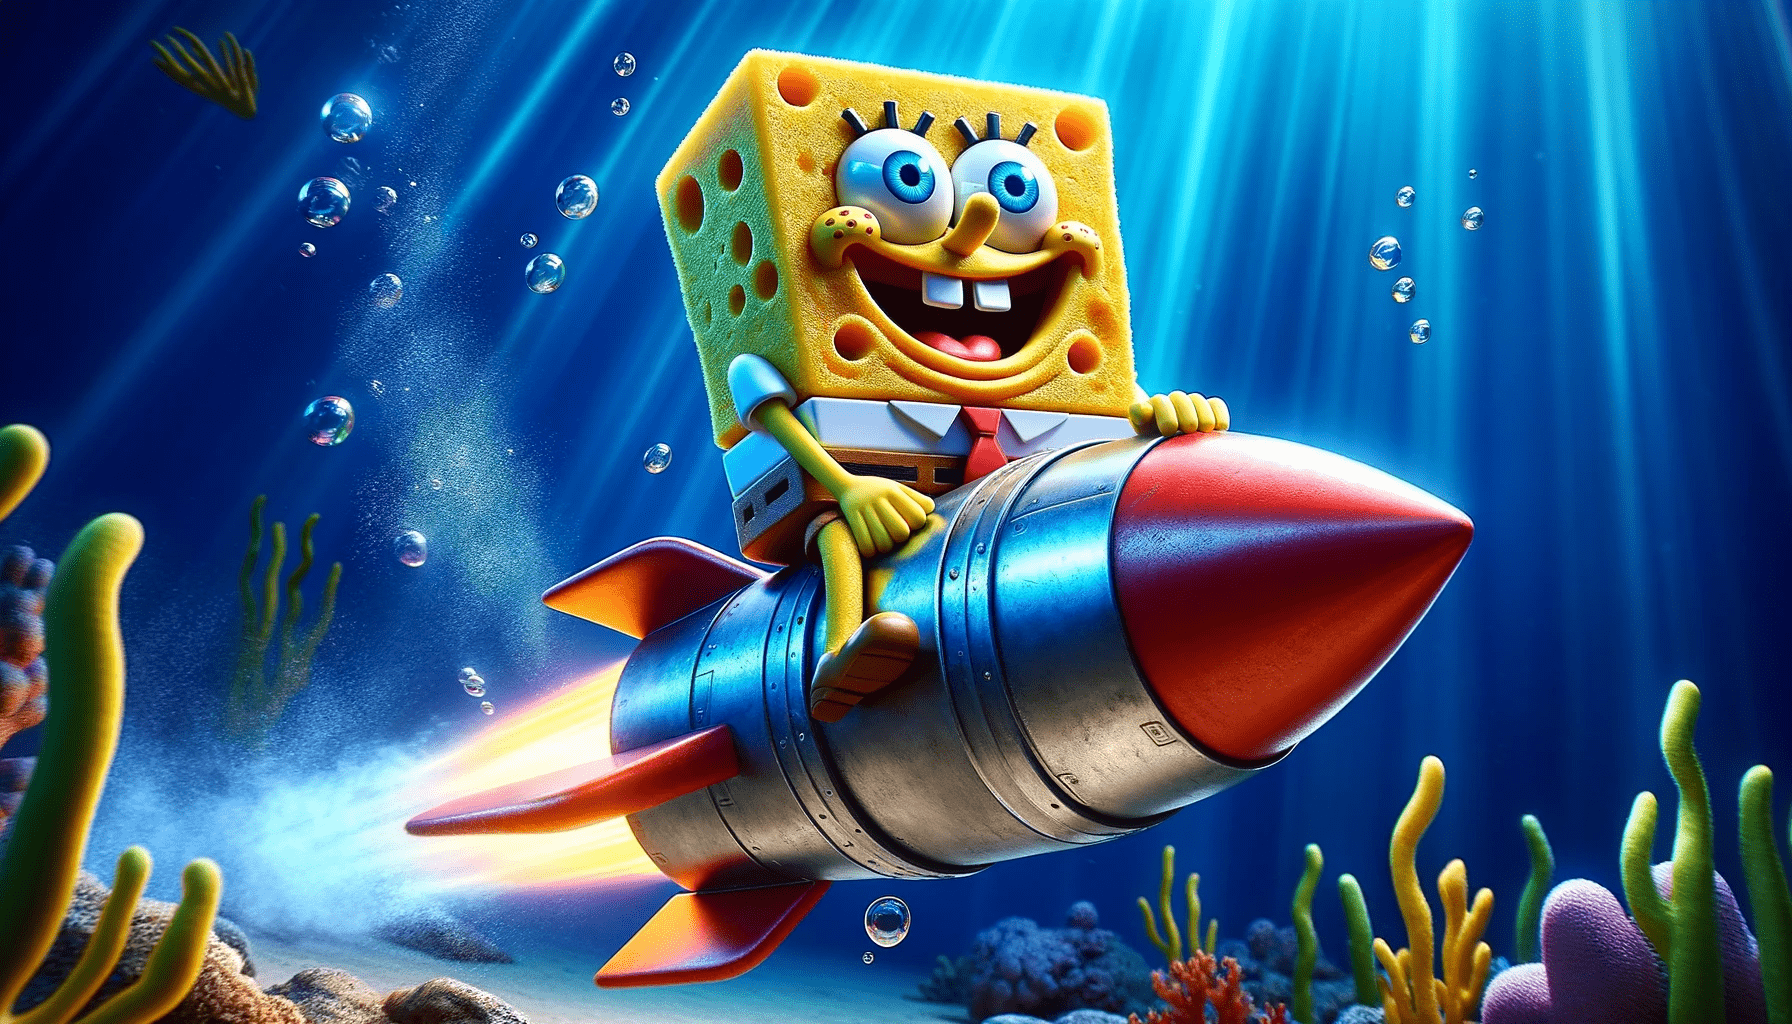 Meme coinSponge v2 mascot riding an underwater rocket. 